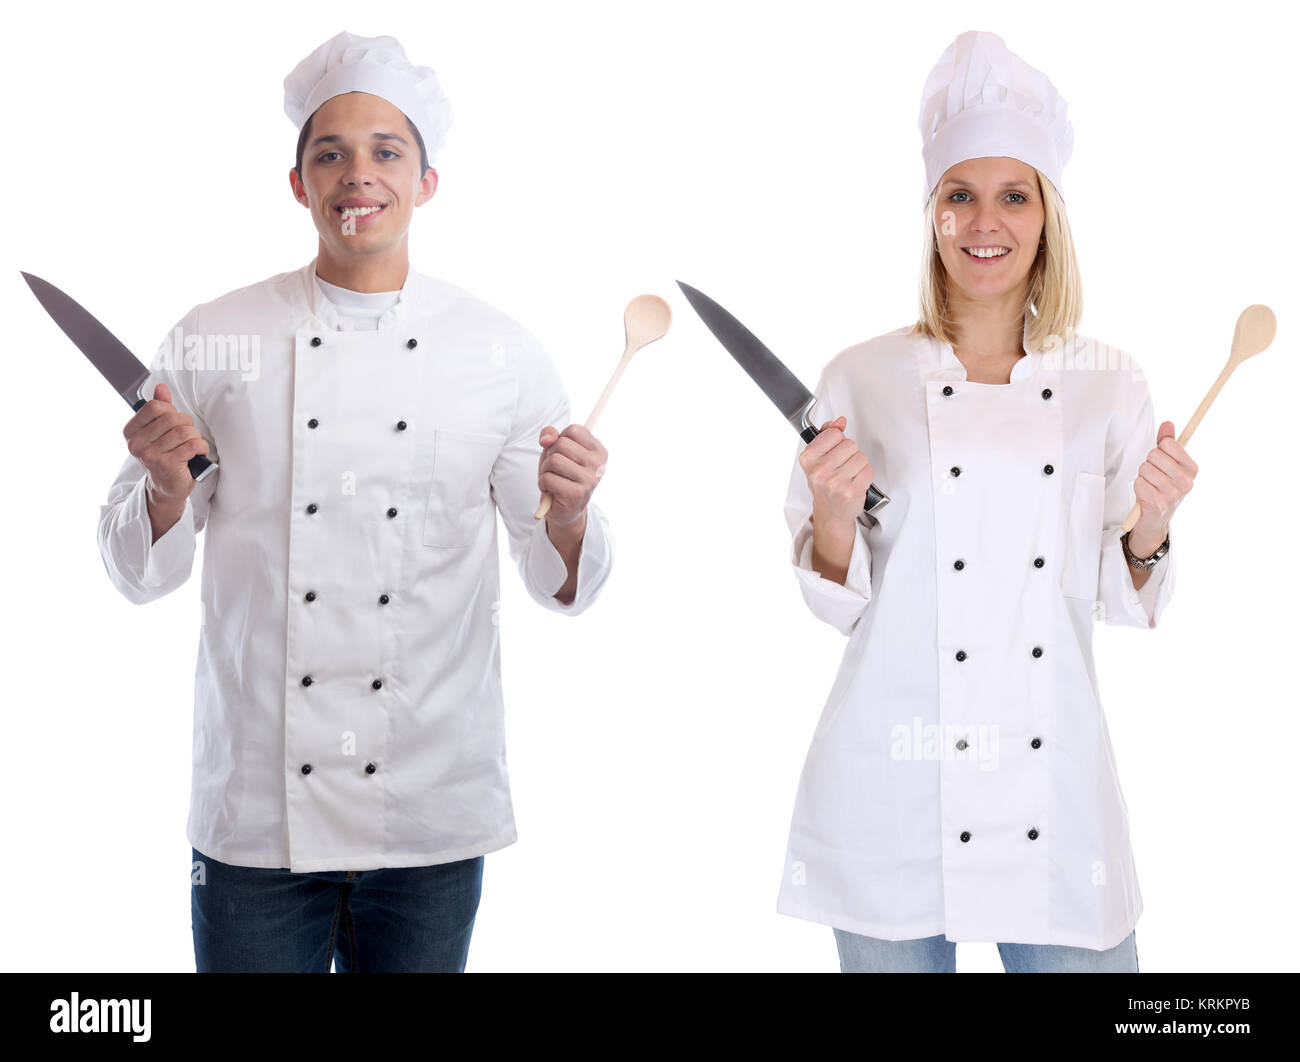 Chef cocineros jóvenes cursillistas aprendiz aprendiz formación profesión de cocina cuchilla cortar Foto de stock